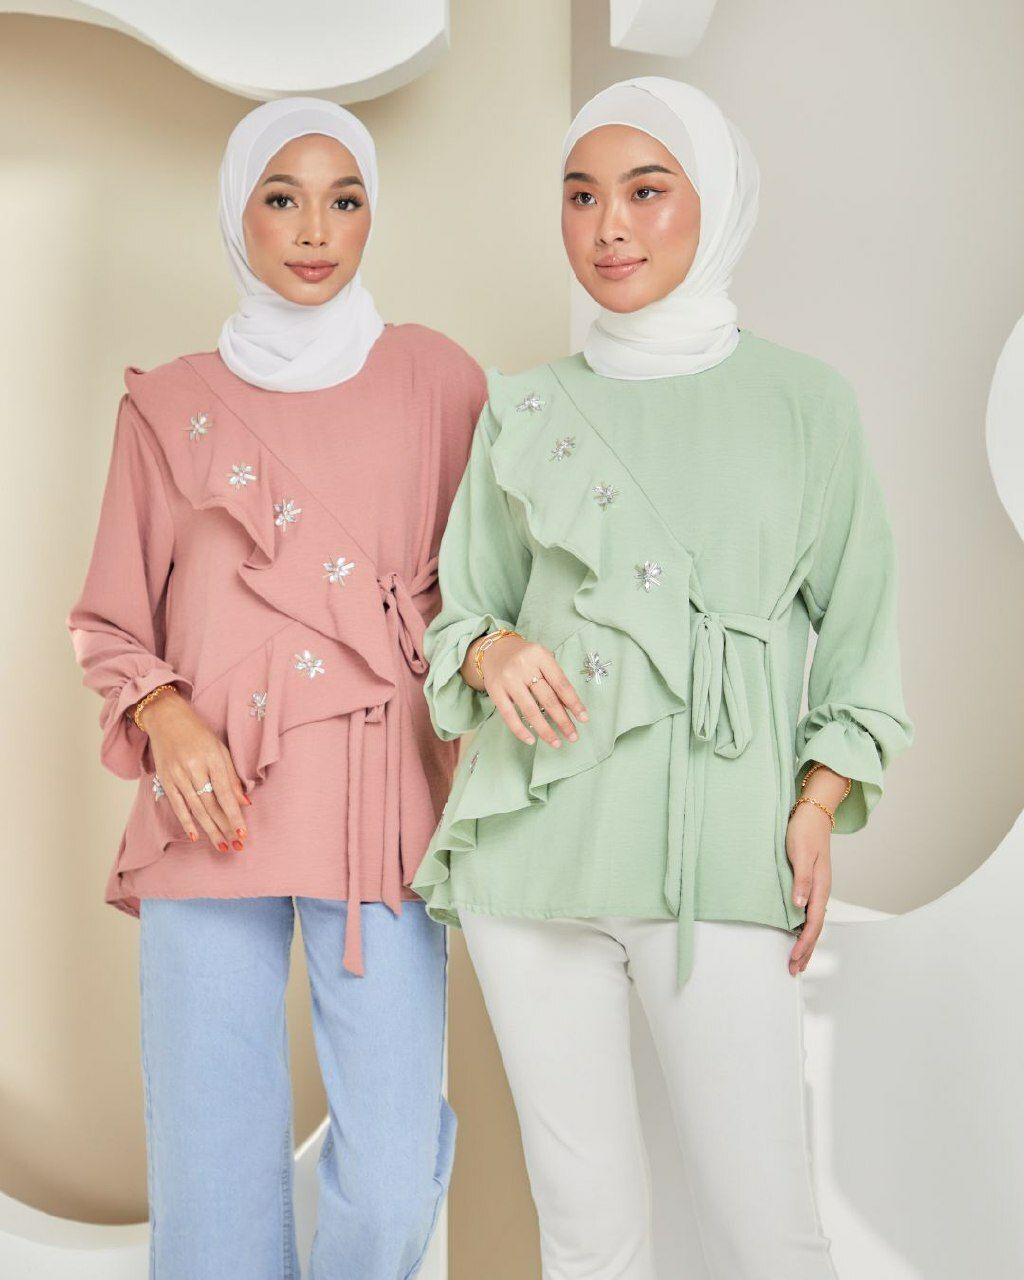 haura-wear-meera-kaftan-midi-dress-blouse-shirt-long-sleeve-baju-muslimah-baju-perempuan-shirt-blouse-baju (6)